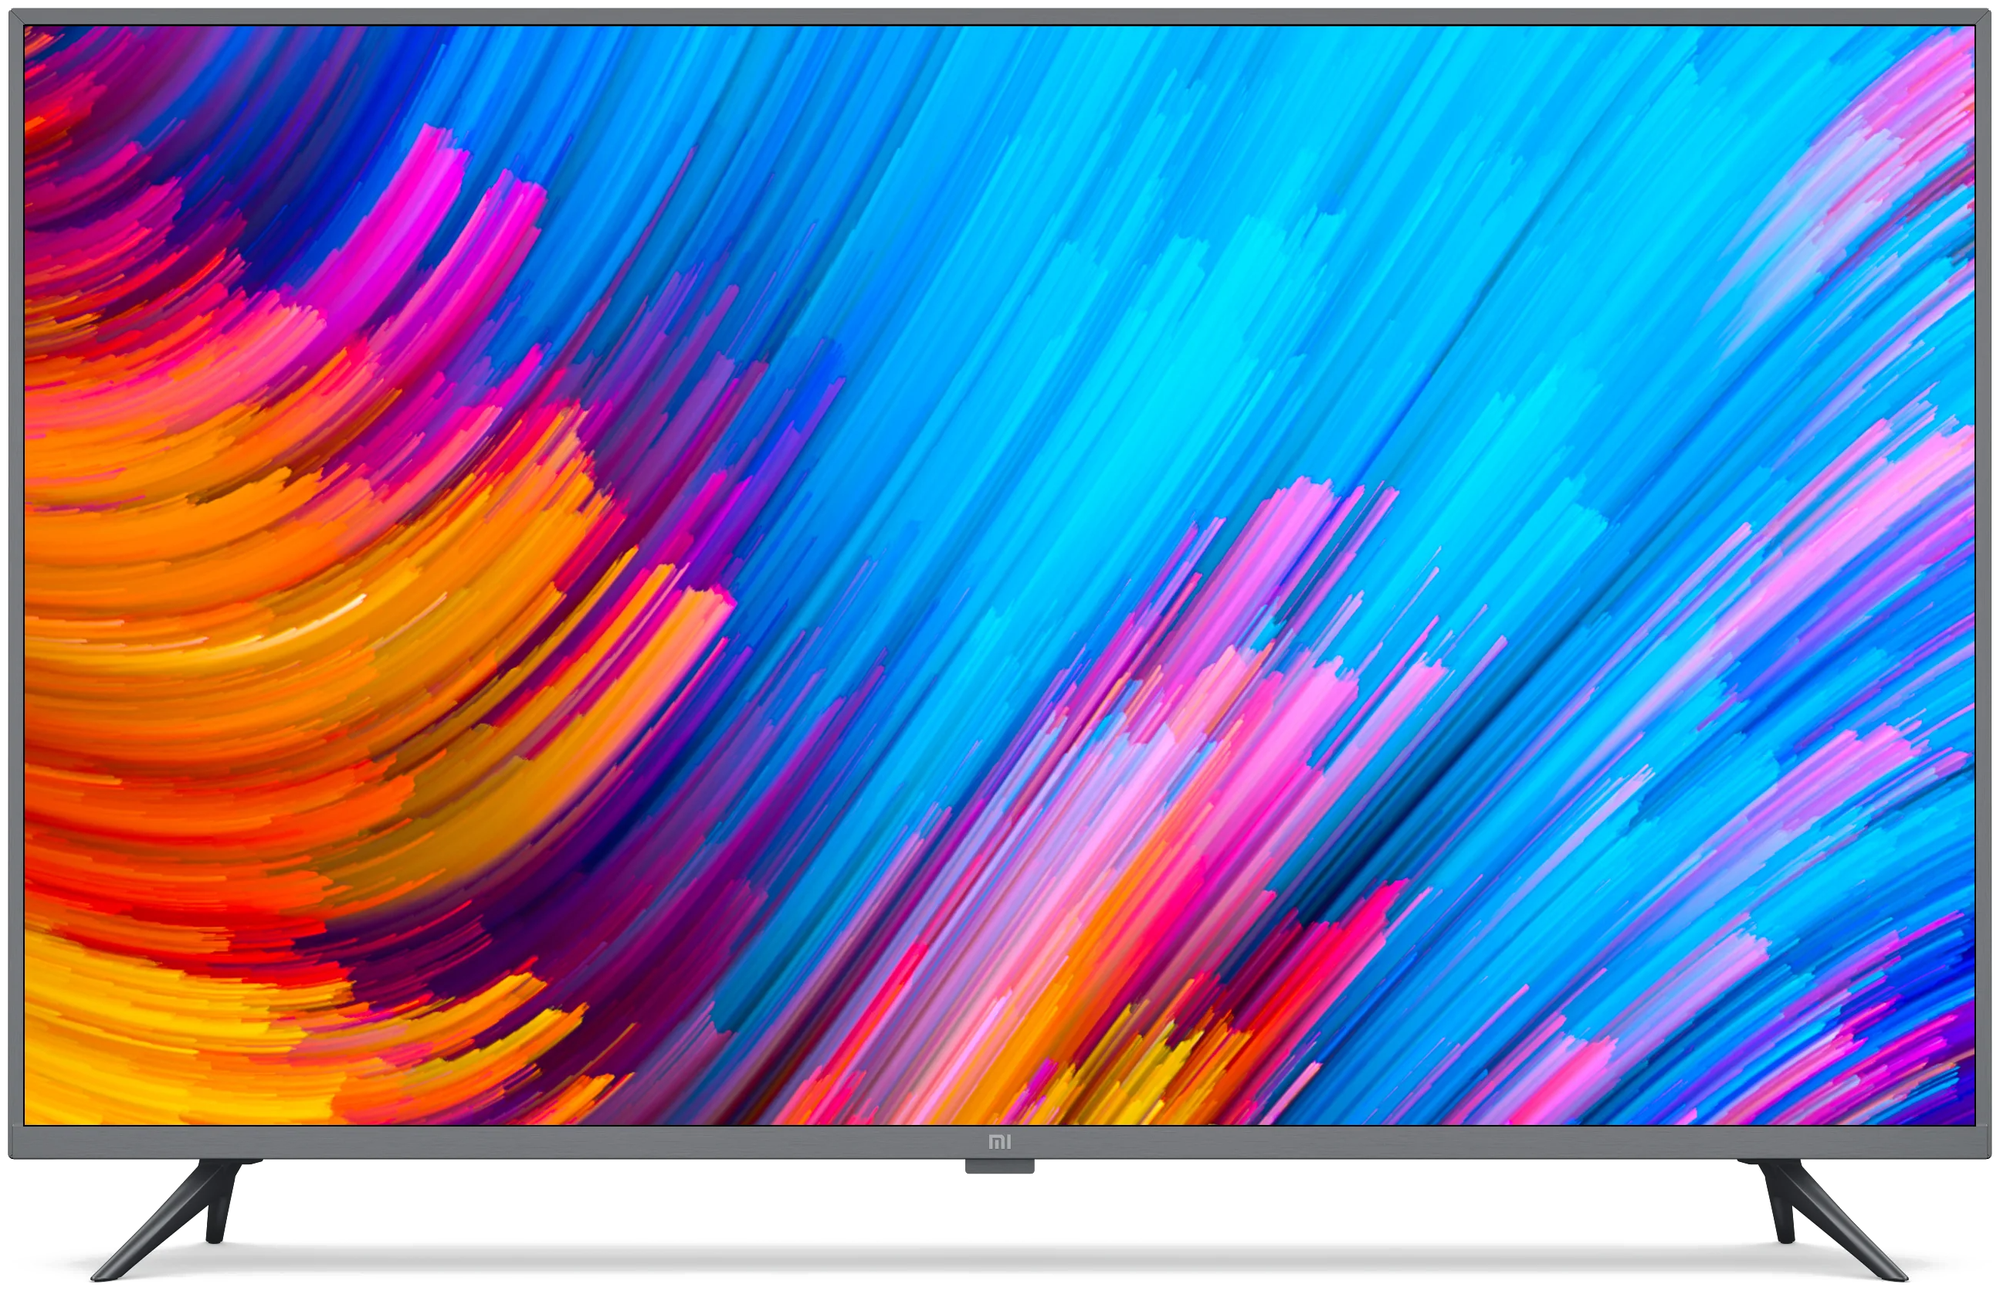 50" Телевизор Xiaomi Mi TV 4S 50 T2 LED, HDR (2018) Global, стальной